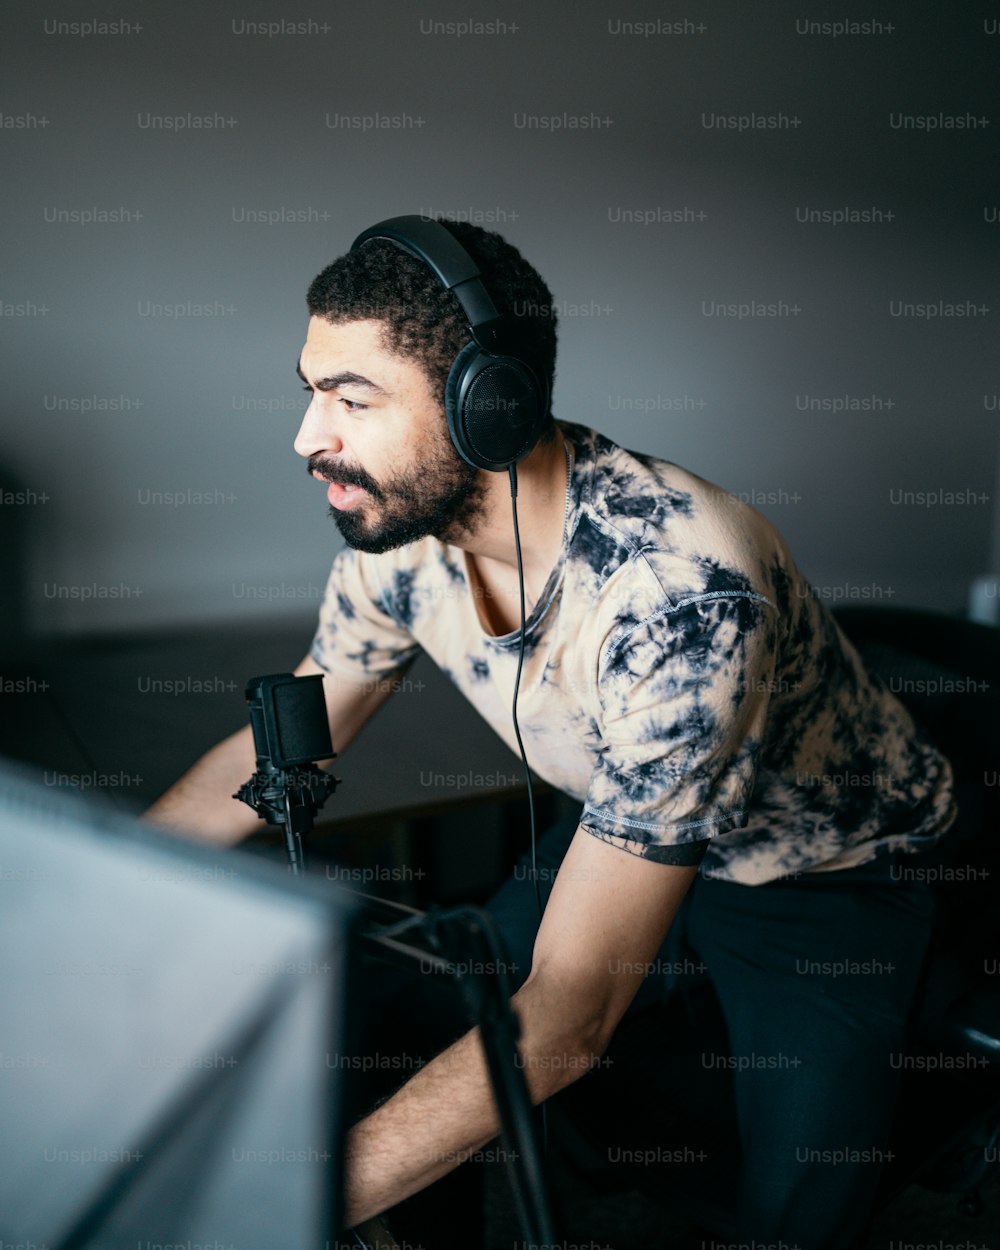 Un hombre sentado frente a una computadora con auriculares